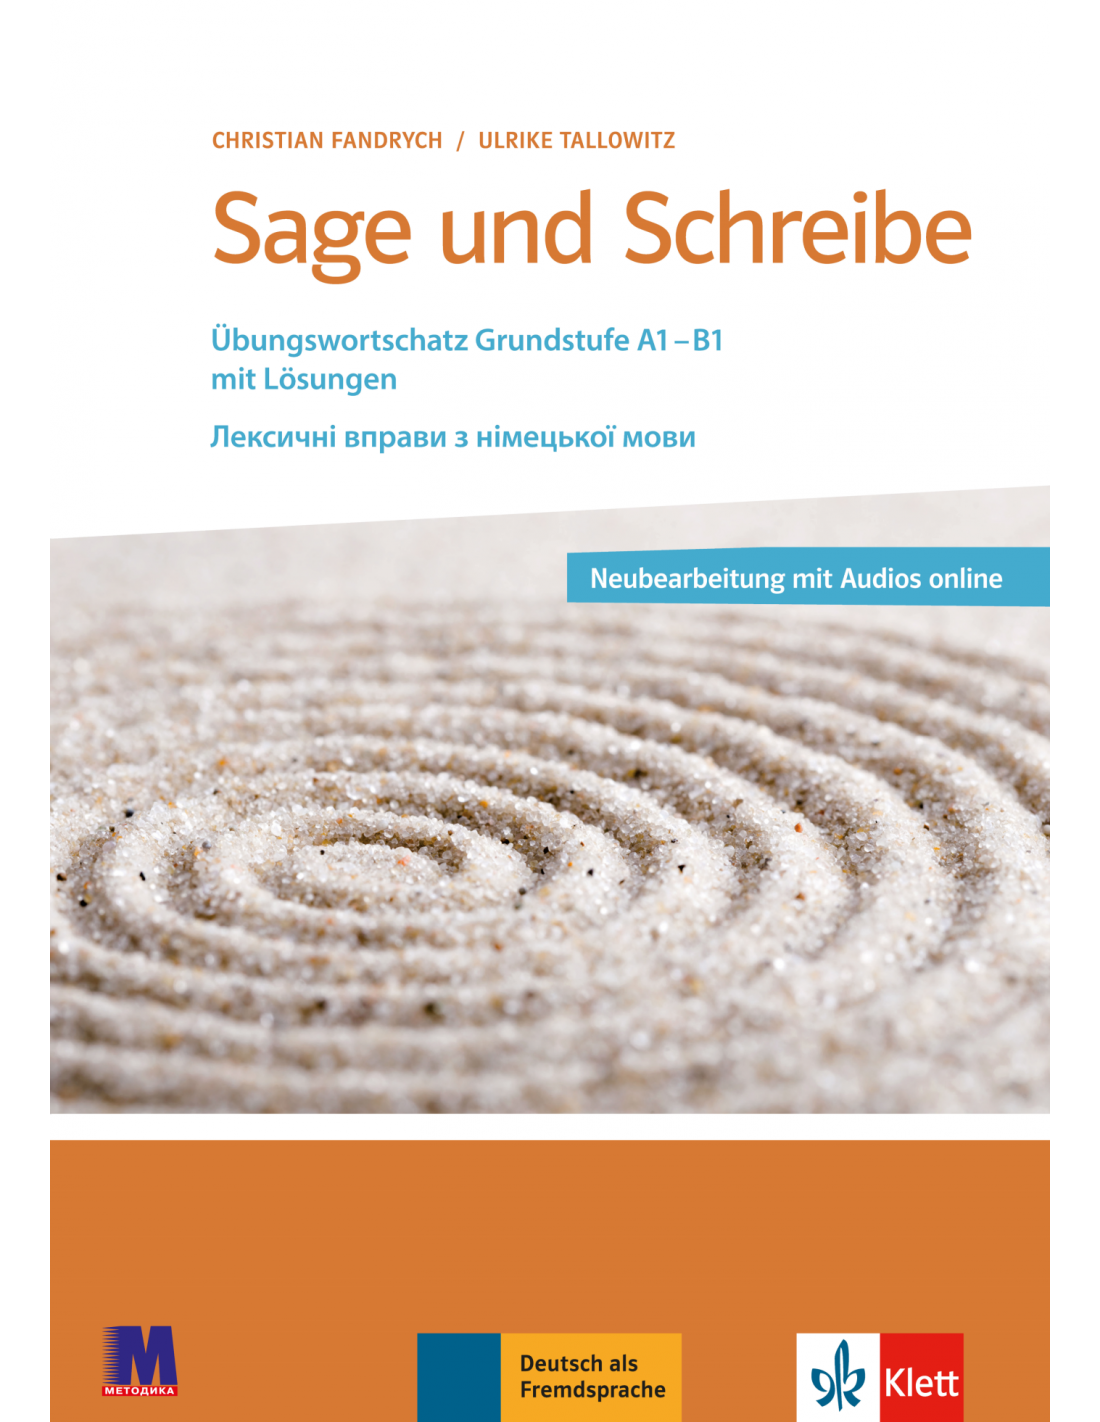 Фандрих Посібник для вивчення лексики німецької мови Базовий рівень Sage und Schreibe - Методика